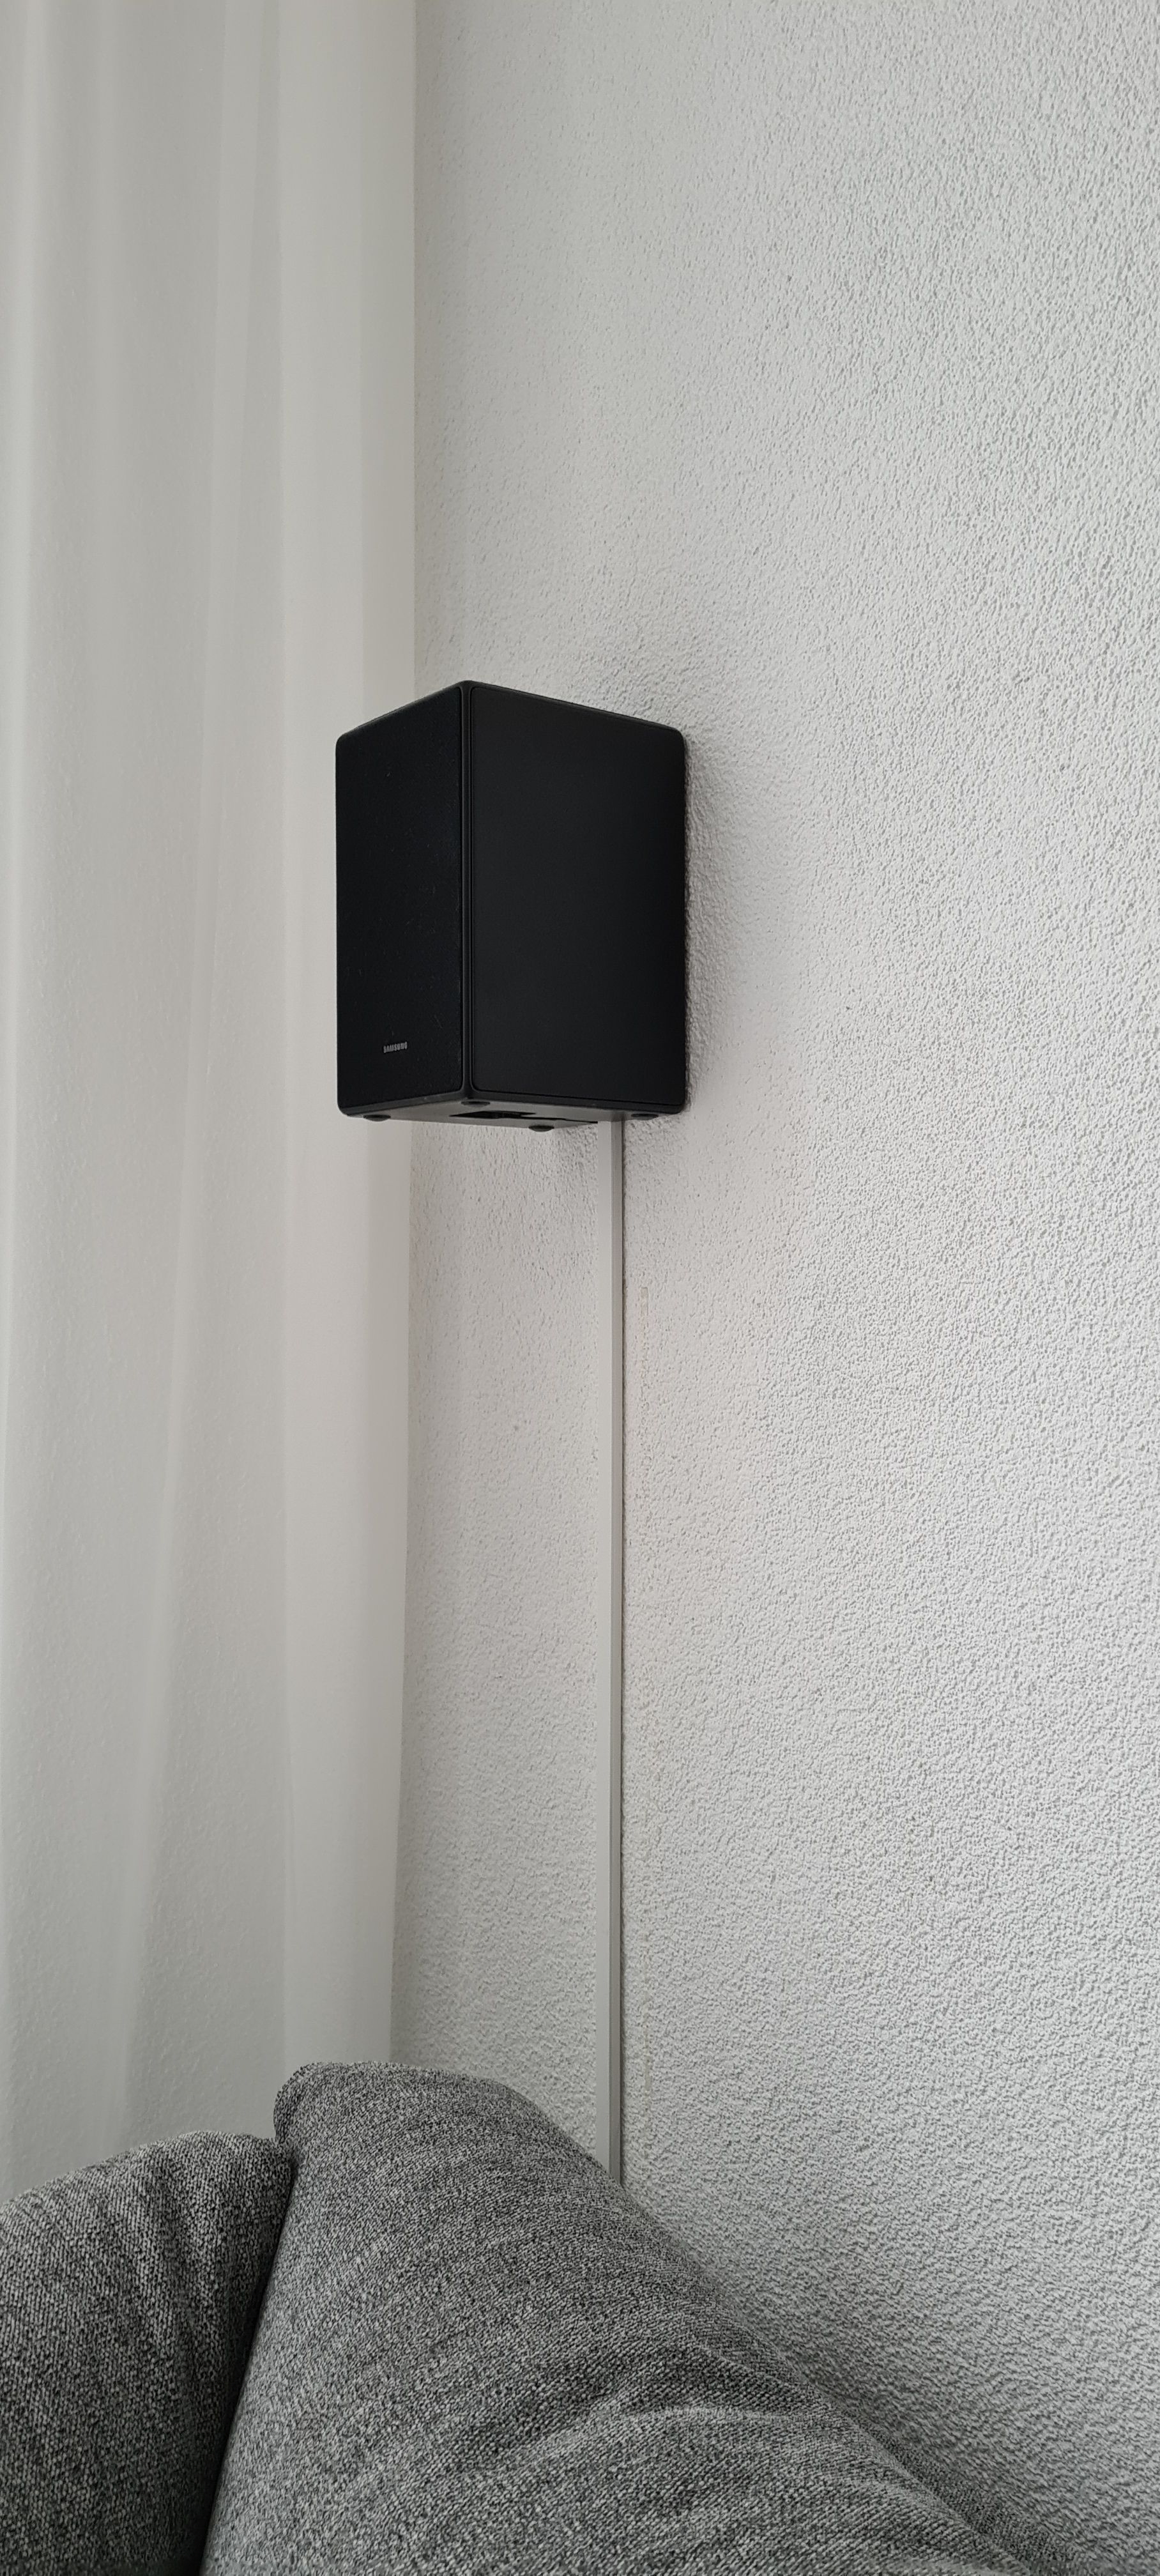 Opgelost: Hoe montage ik HW-K950 atmos rear speakers op de muur? - Samsung  Community